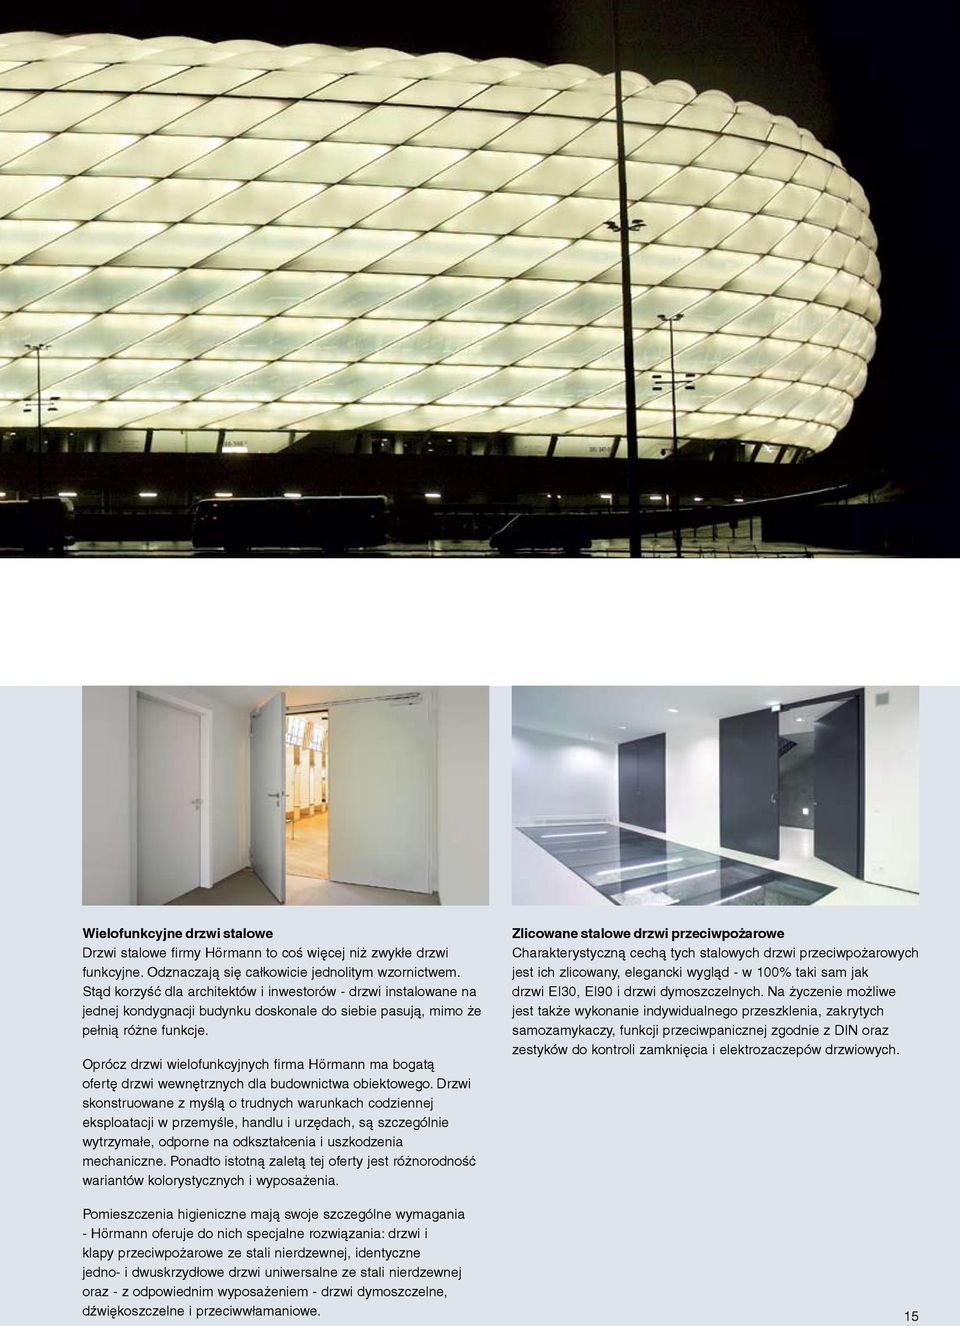 Oprócz drzwi wielofunkcyjnych firma Hörmann ma bogatą ofertę drzwi wewnętrznych dla budownictwa obiektowego.